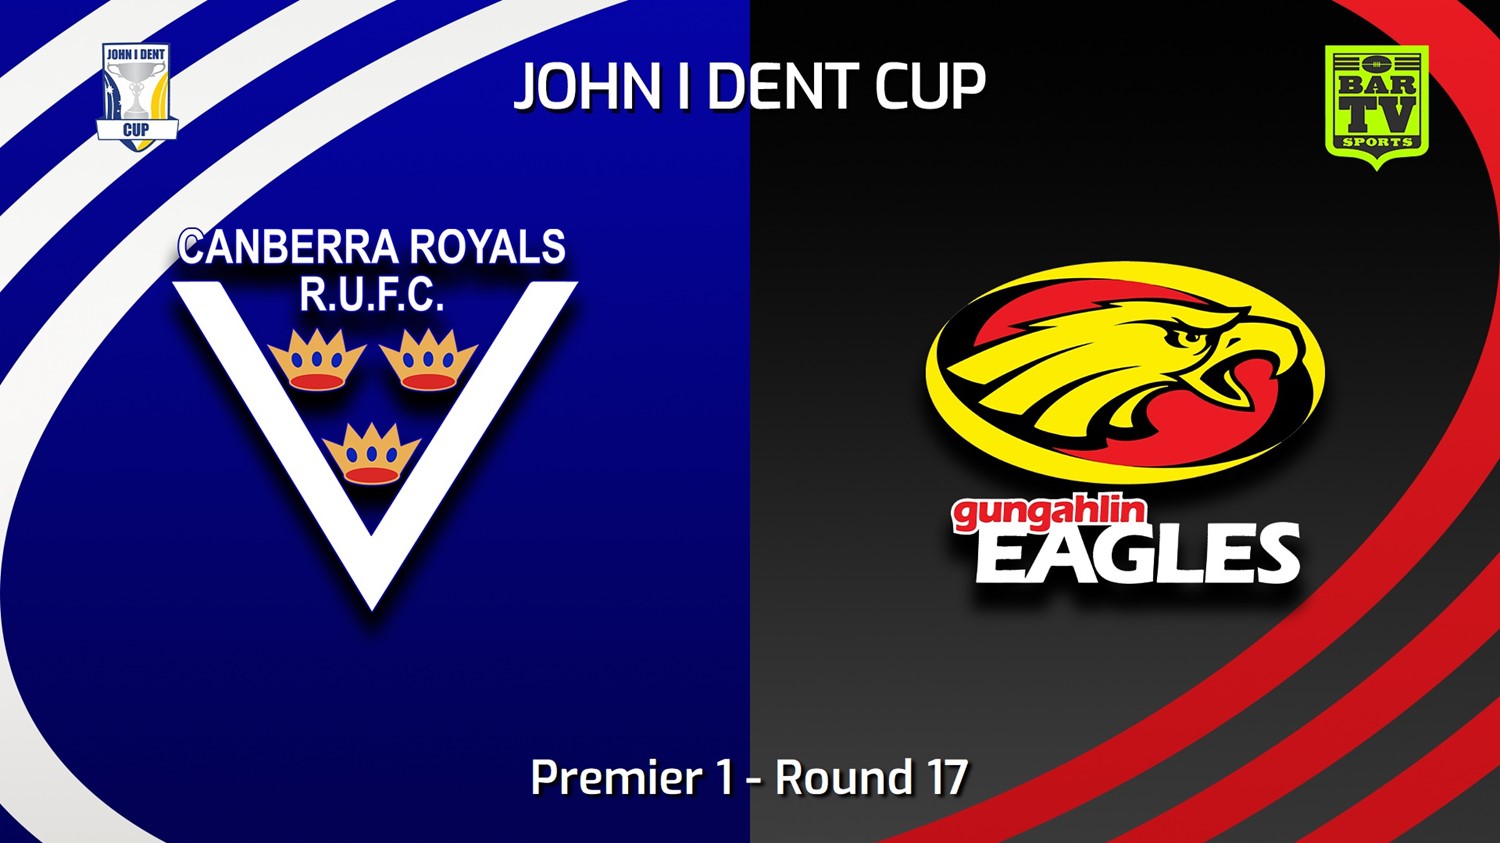 230805-John I Dent (ACT) Round 17 - Premier 1 - Canberra Royals v Gungahlin Eagles Minigame Slate Image